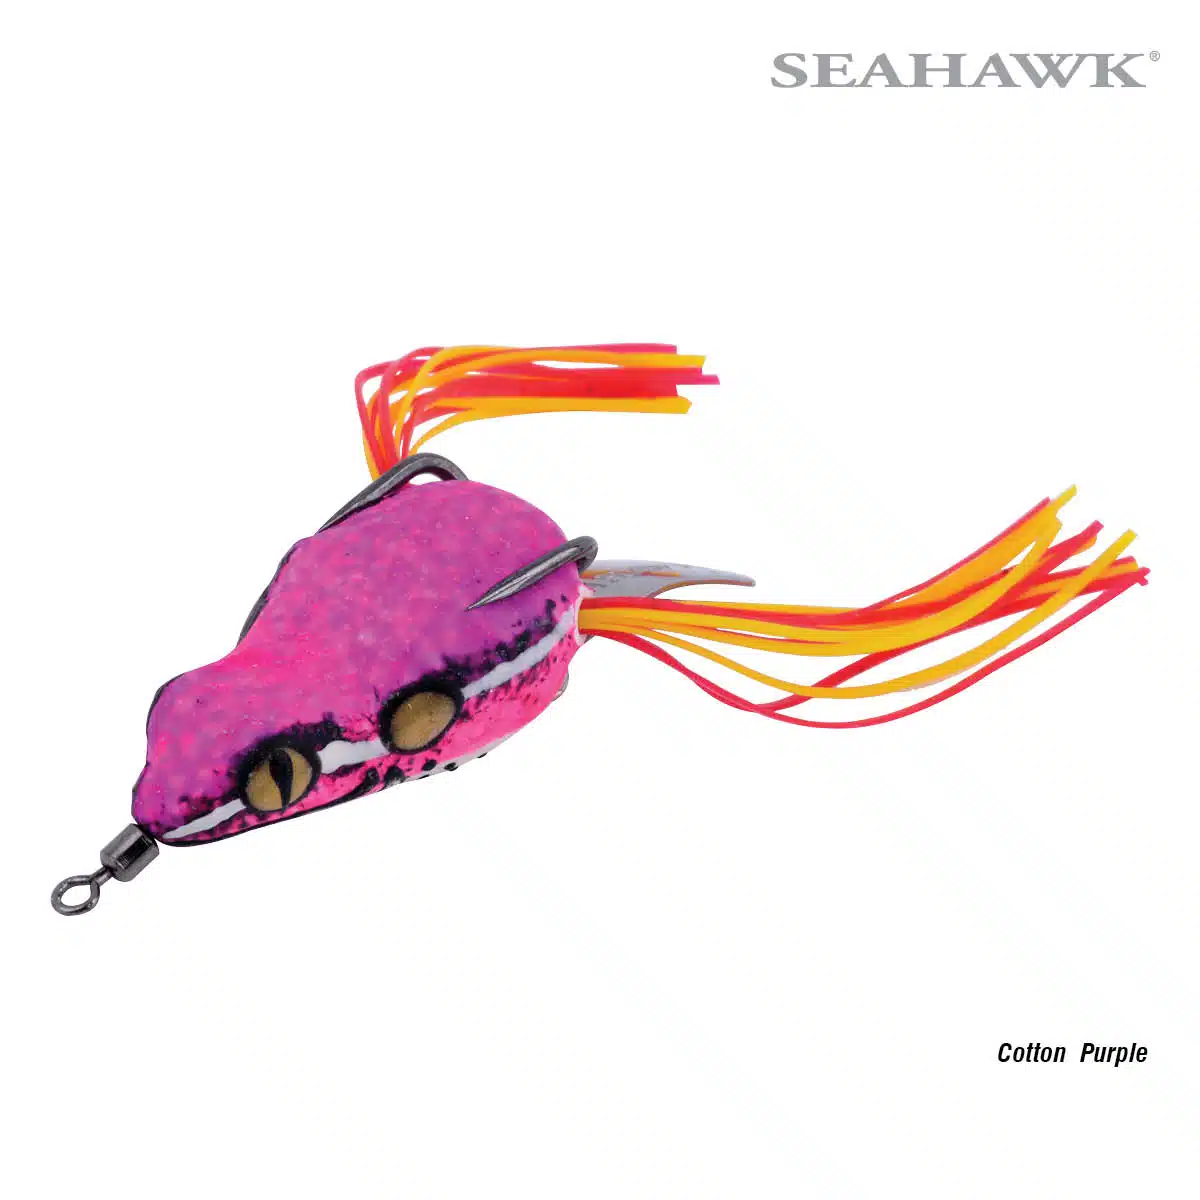 Seahawk Arrow Frog 40 Cotton Purple